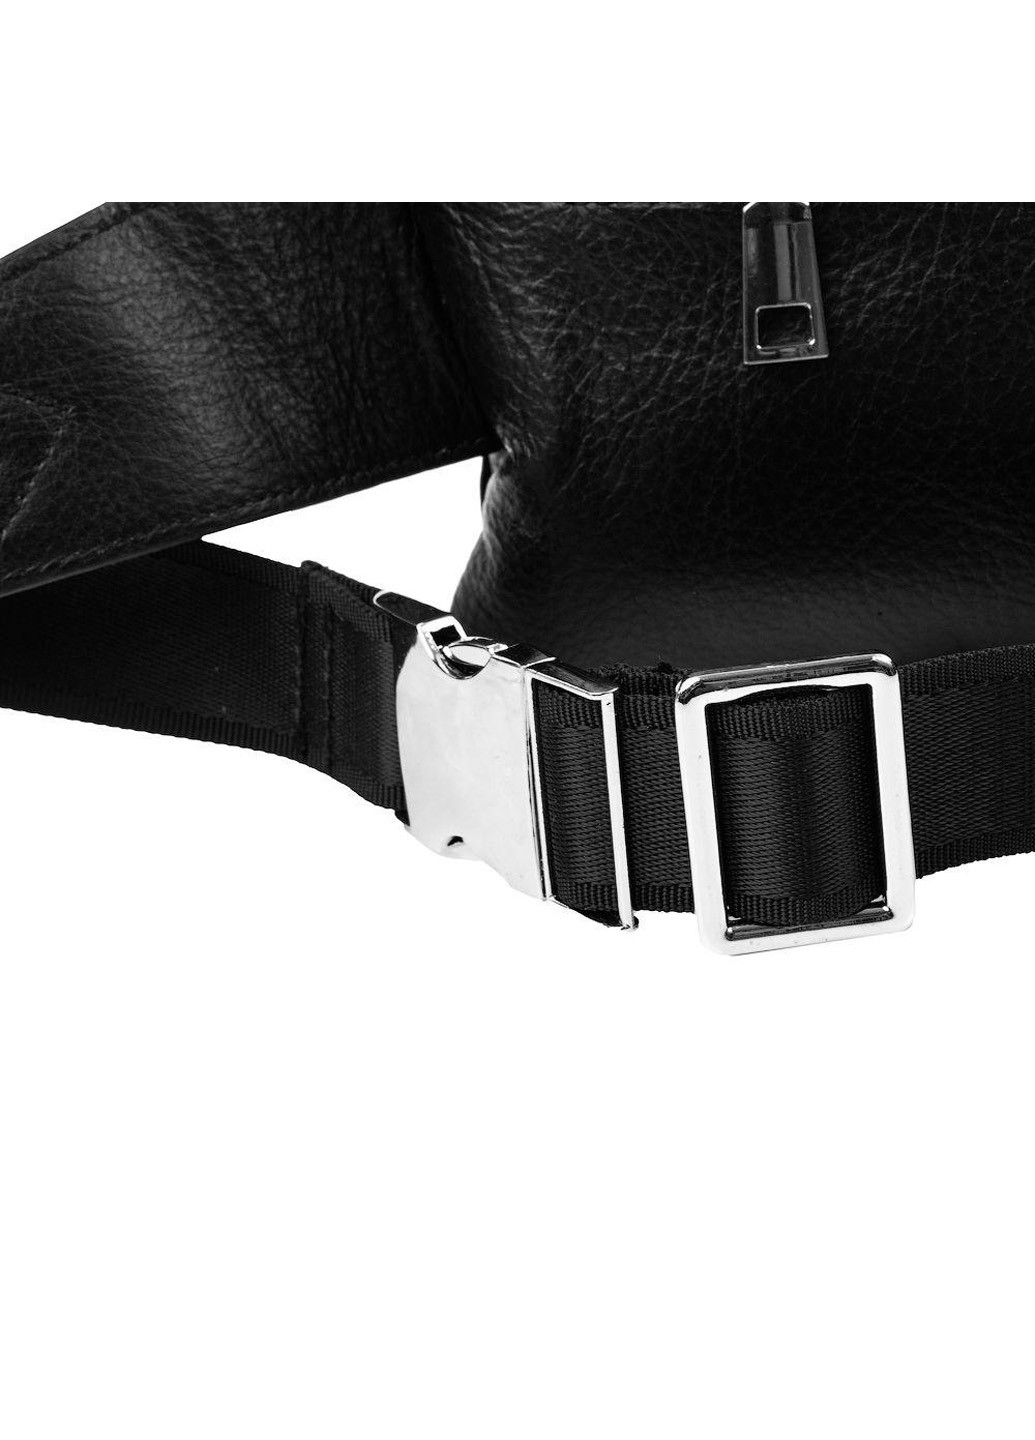 Жіноча шкіряна поясна сумка 23х13х4,5 см Valiria Fashion (205132251)